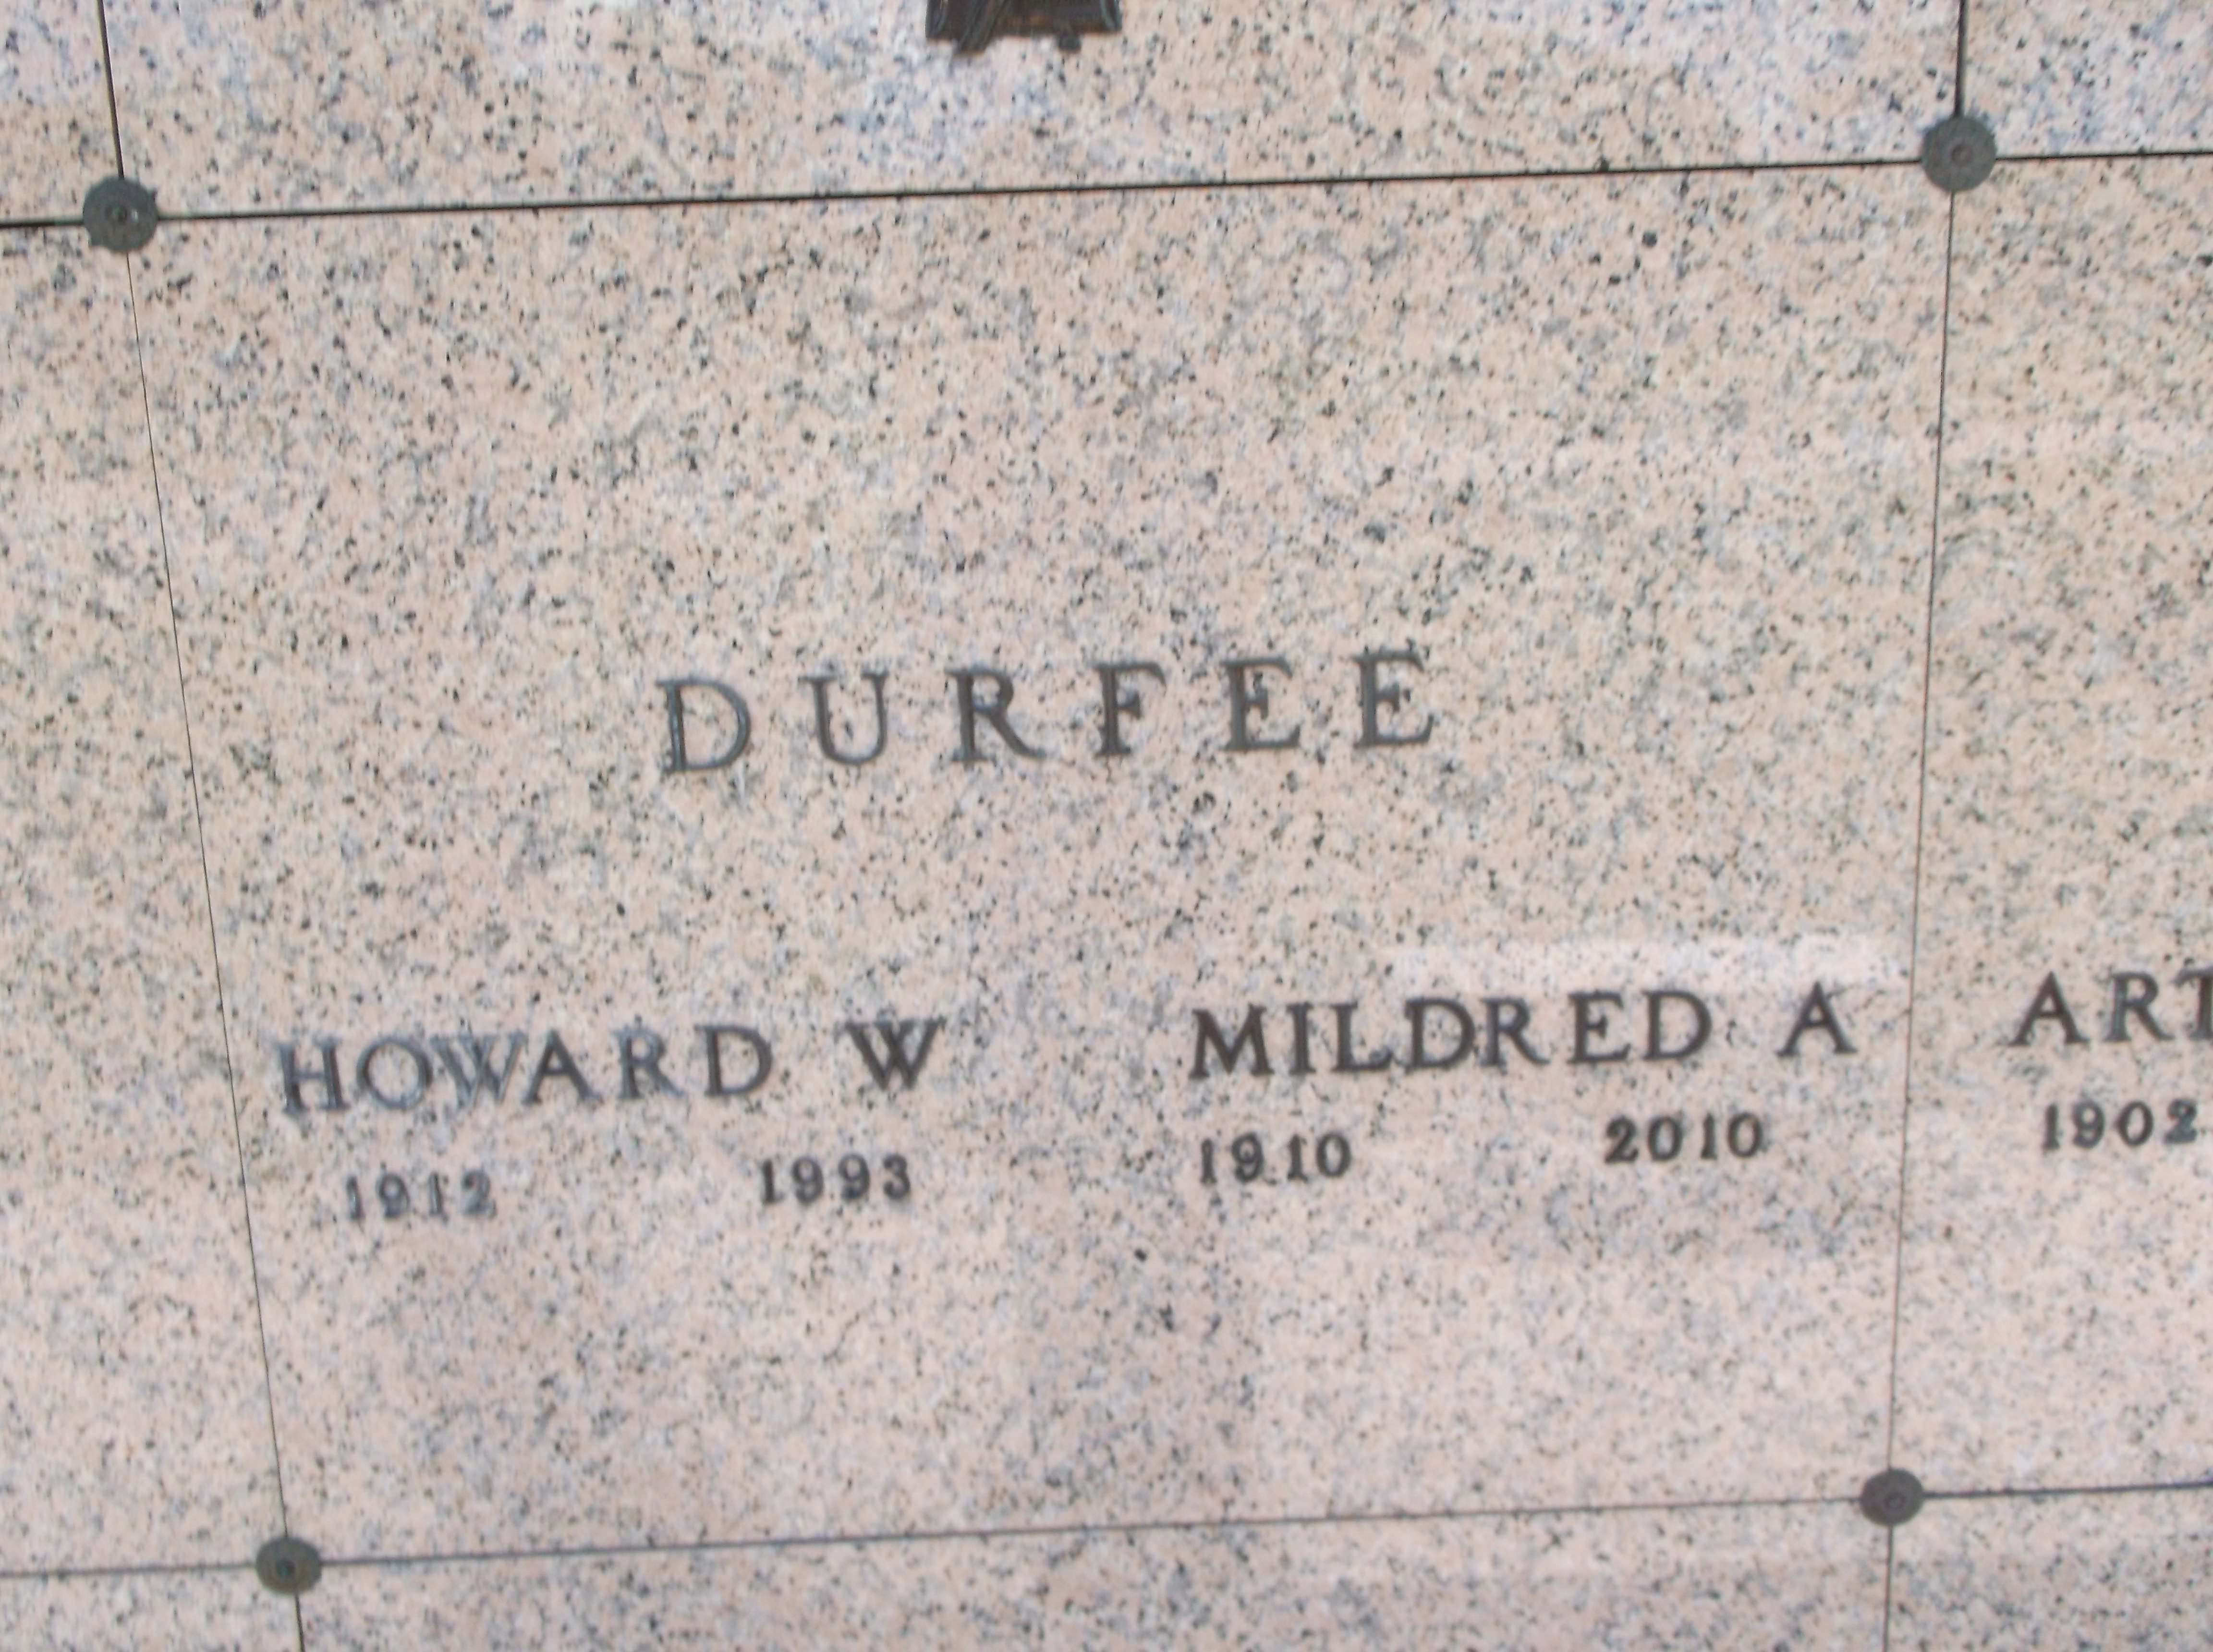 Mildred A Durfee